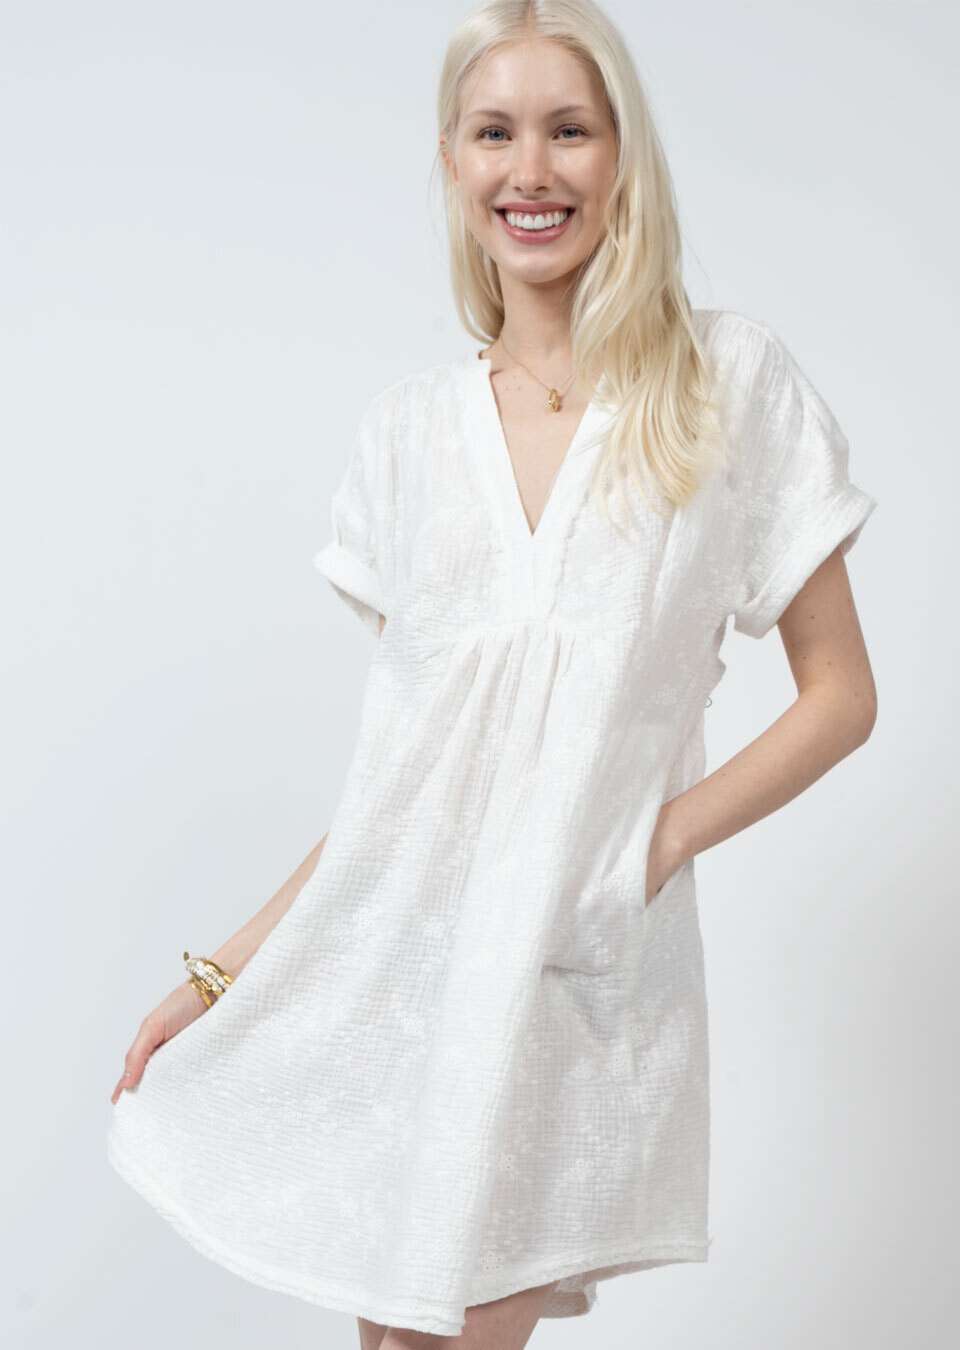 Rosey Outlook Dress White